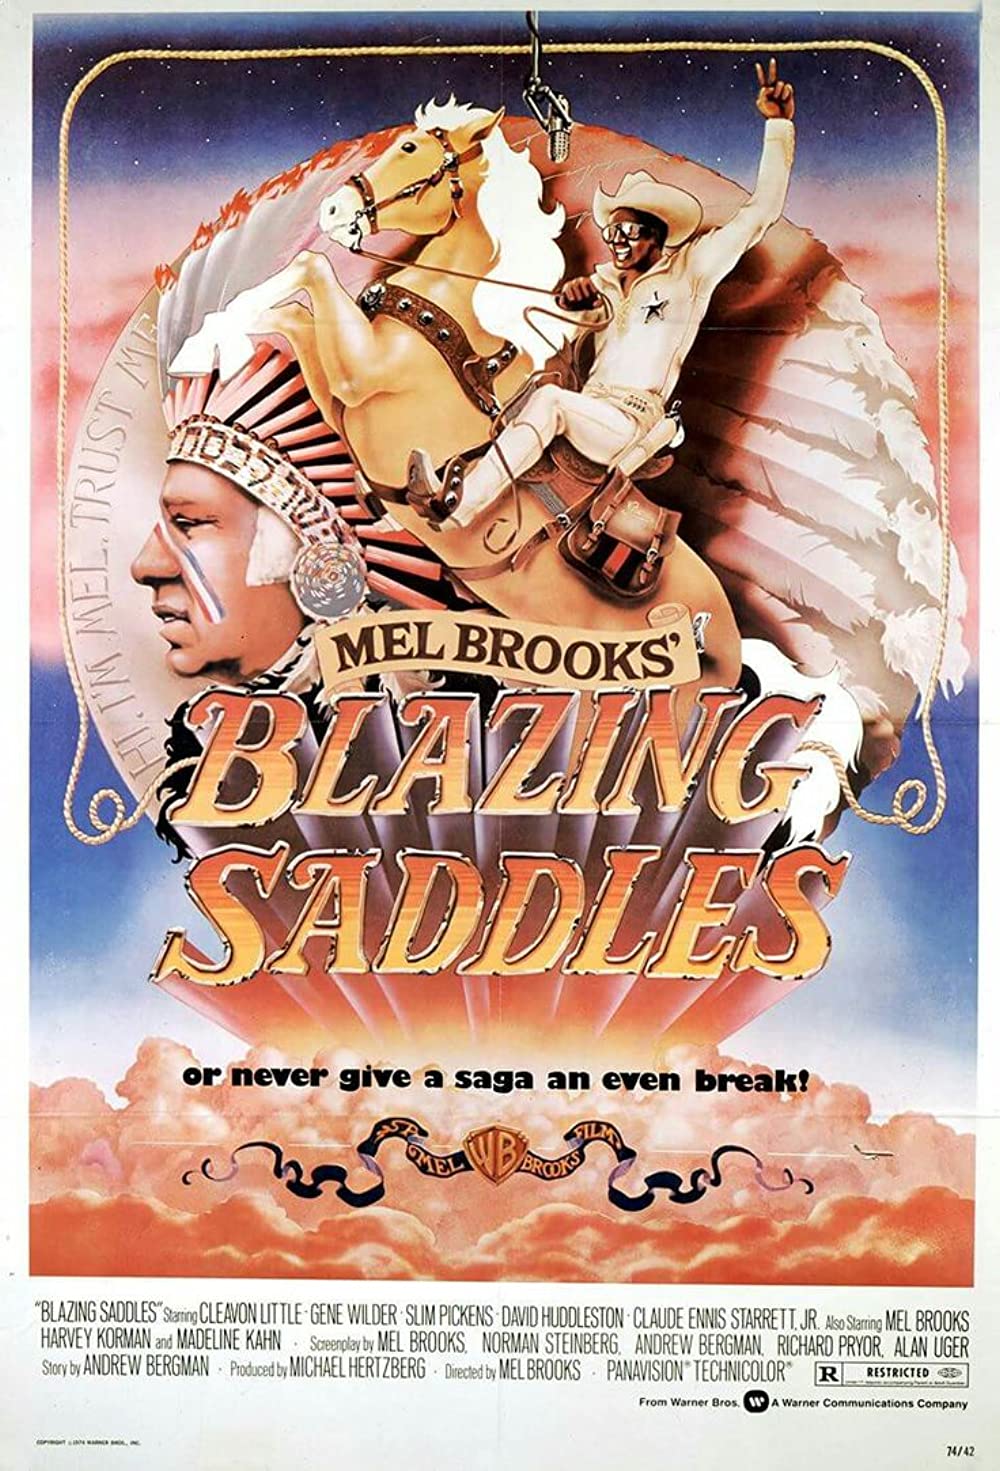 Filmbeschreibung zu Blazing Saddles (OV)